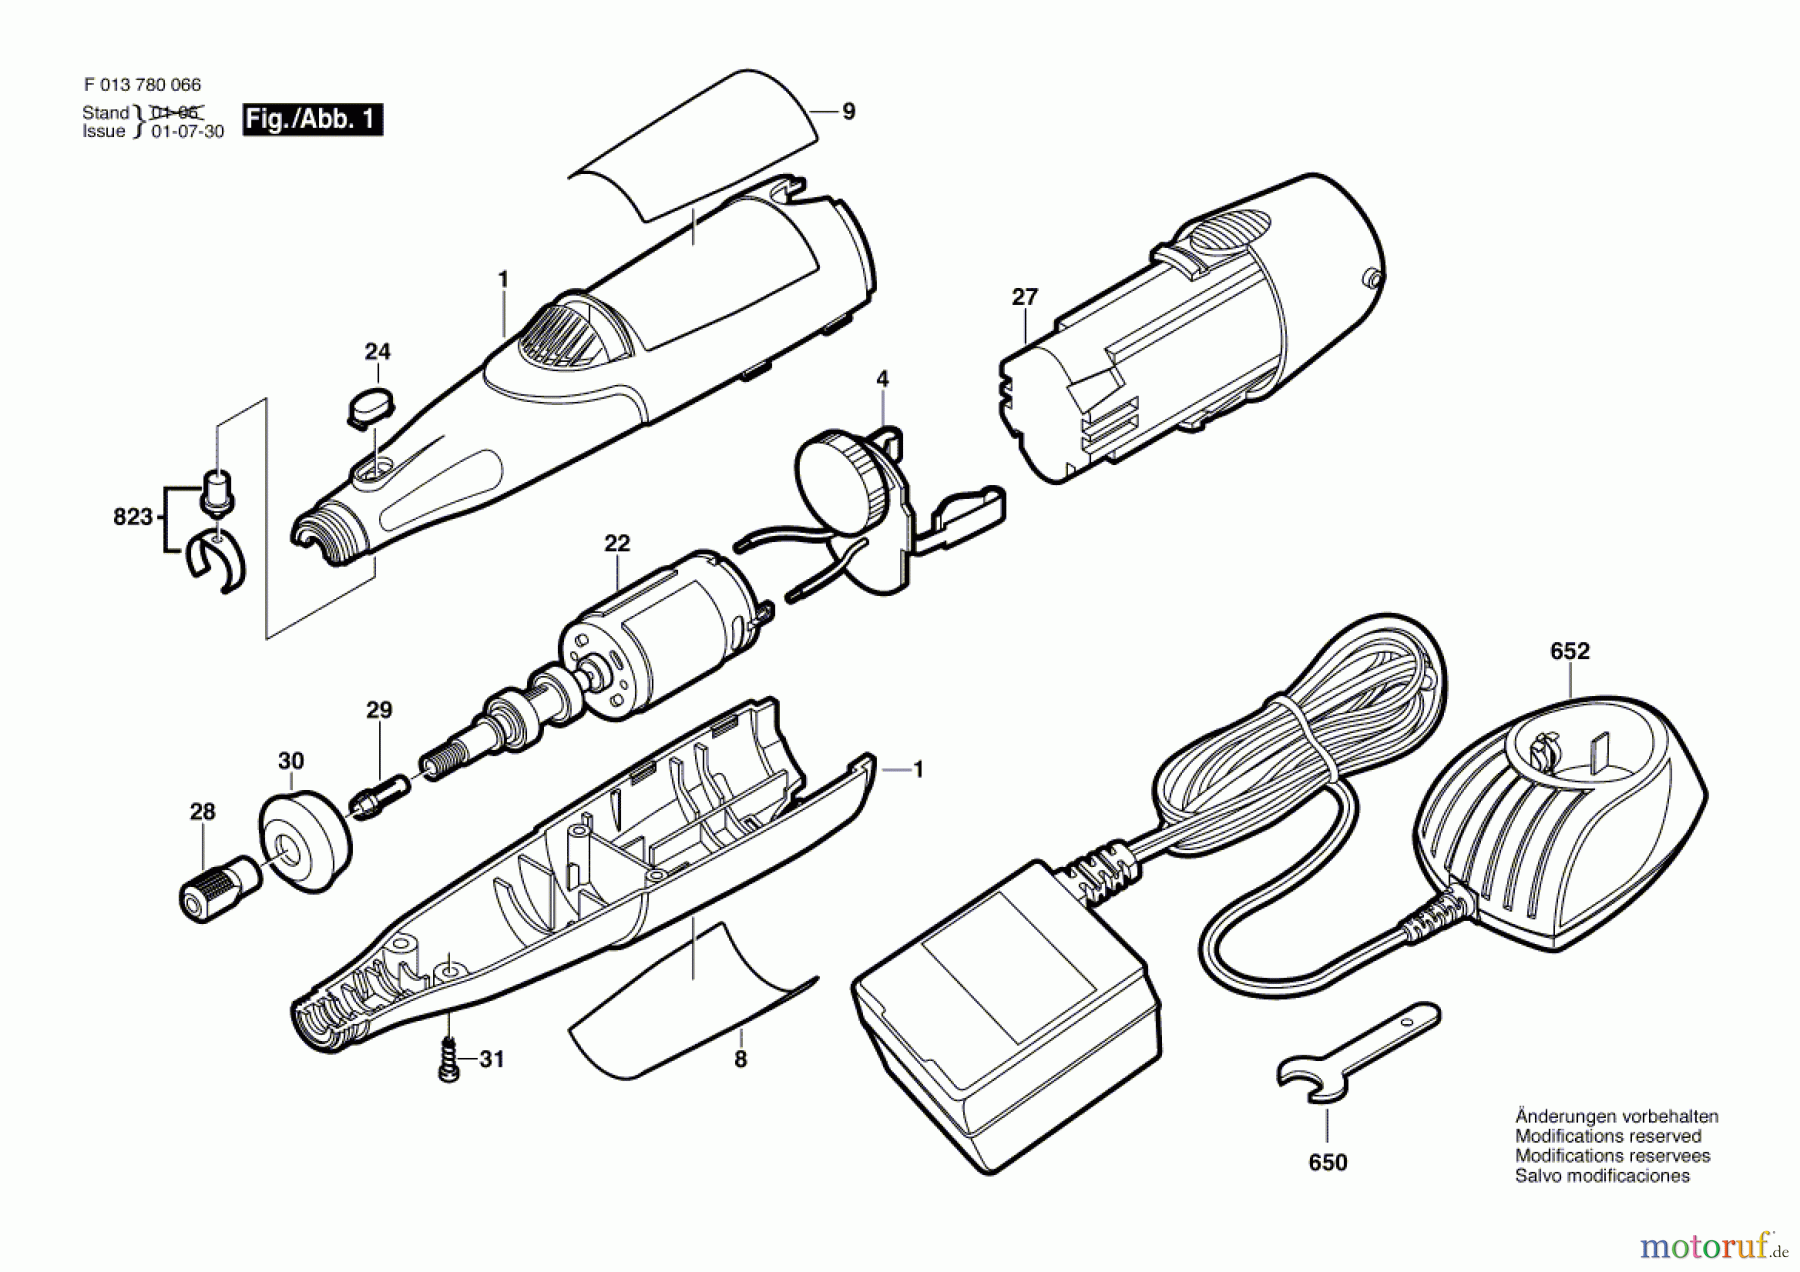  Bosch Werkzeug Drehwerkzeug 780 Seite 1